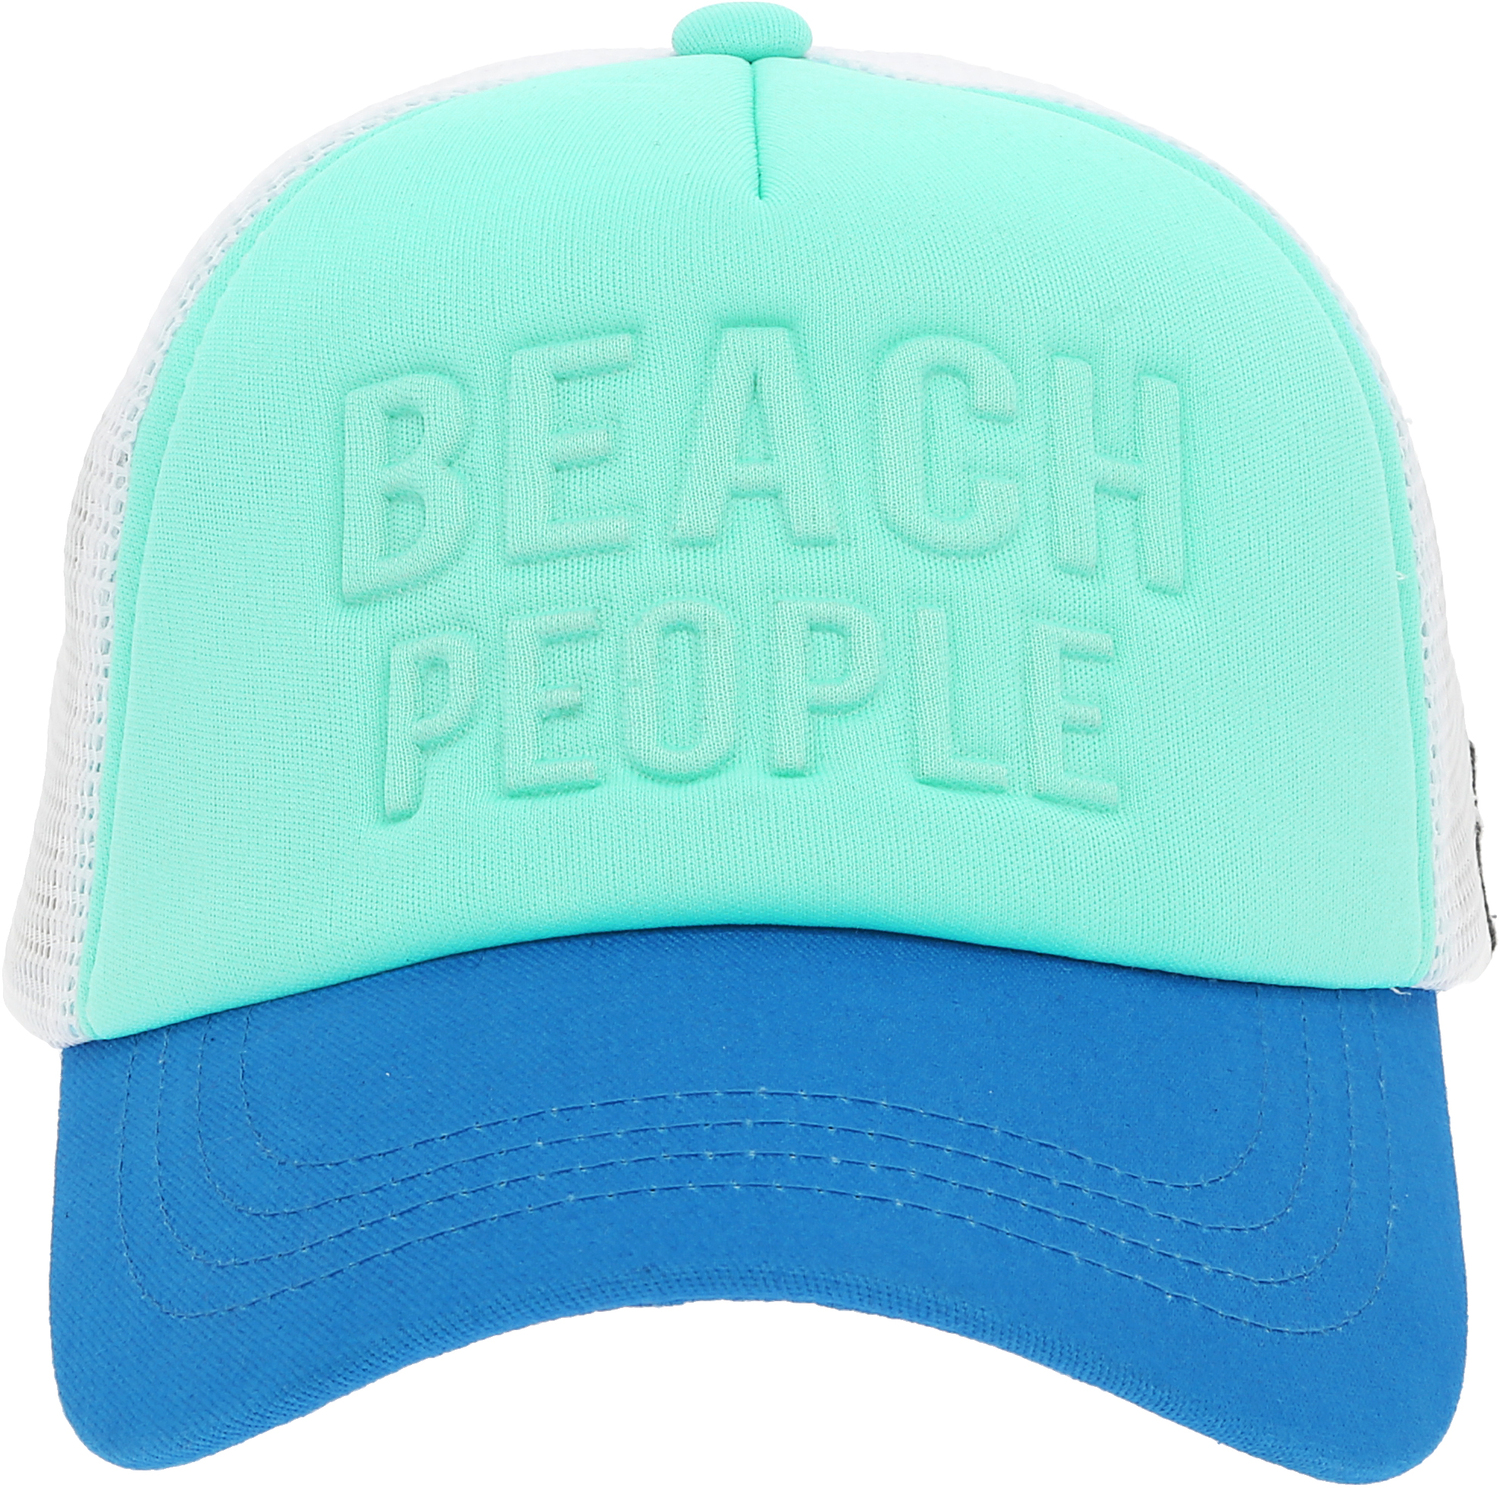 Beach People by We People - Beach People - Adjustable Light Blue Neoprene Mesh Hat